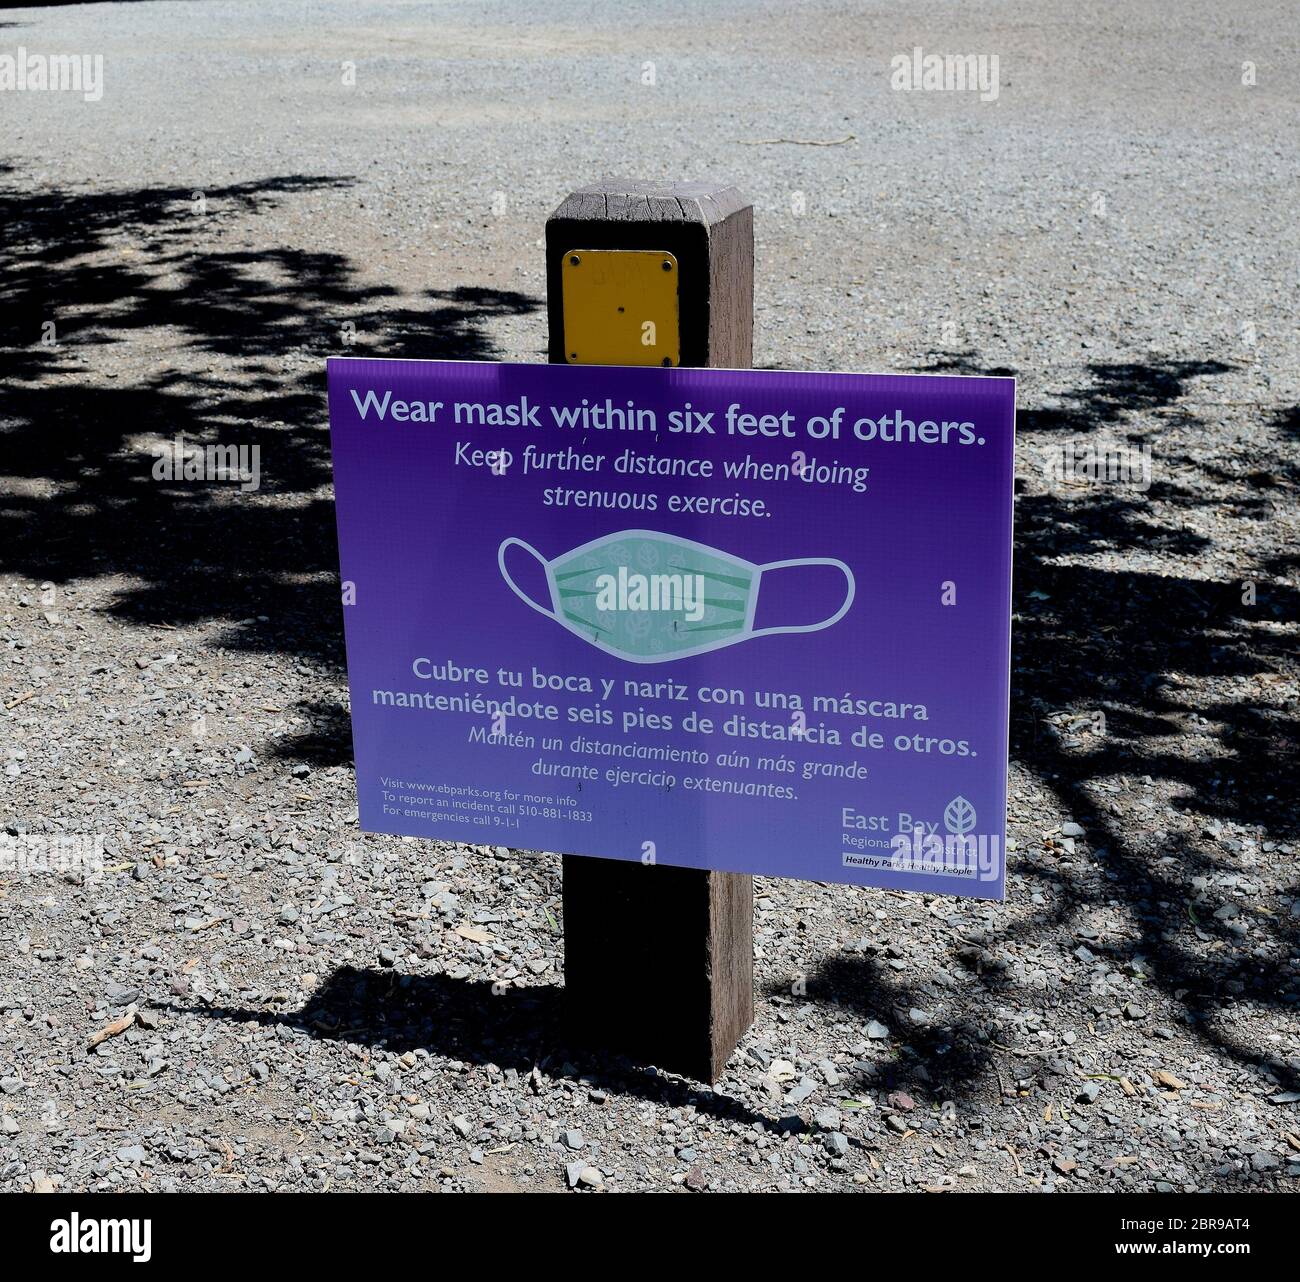 Covid-19 Park información para visitantes signo sobre distanciamiento social y el uso de máscaras en el Área Regional de Recreación de Quarry Lakes, Fremont, California Foto de stock